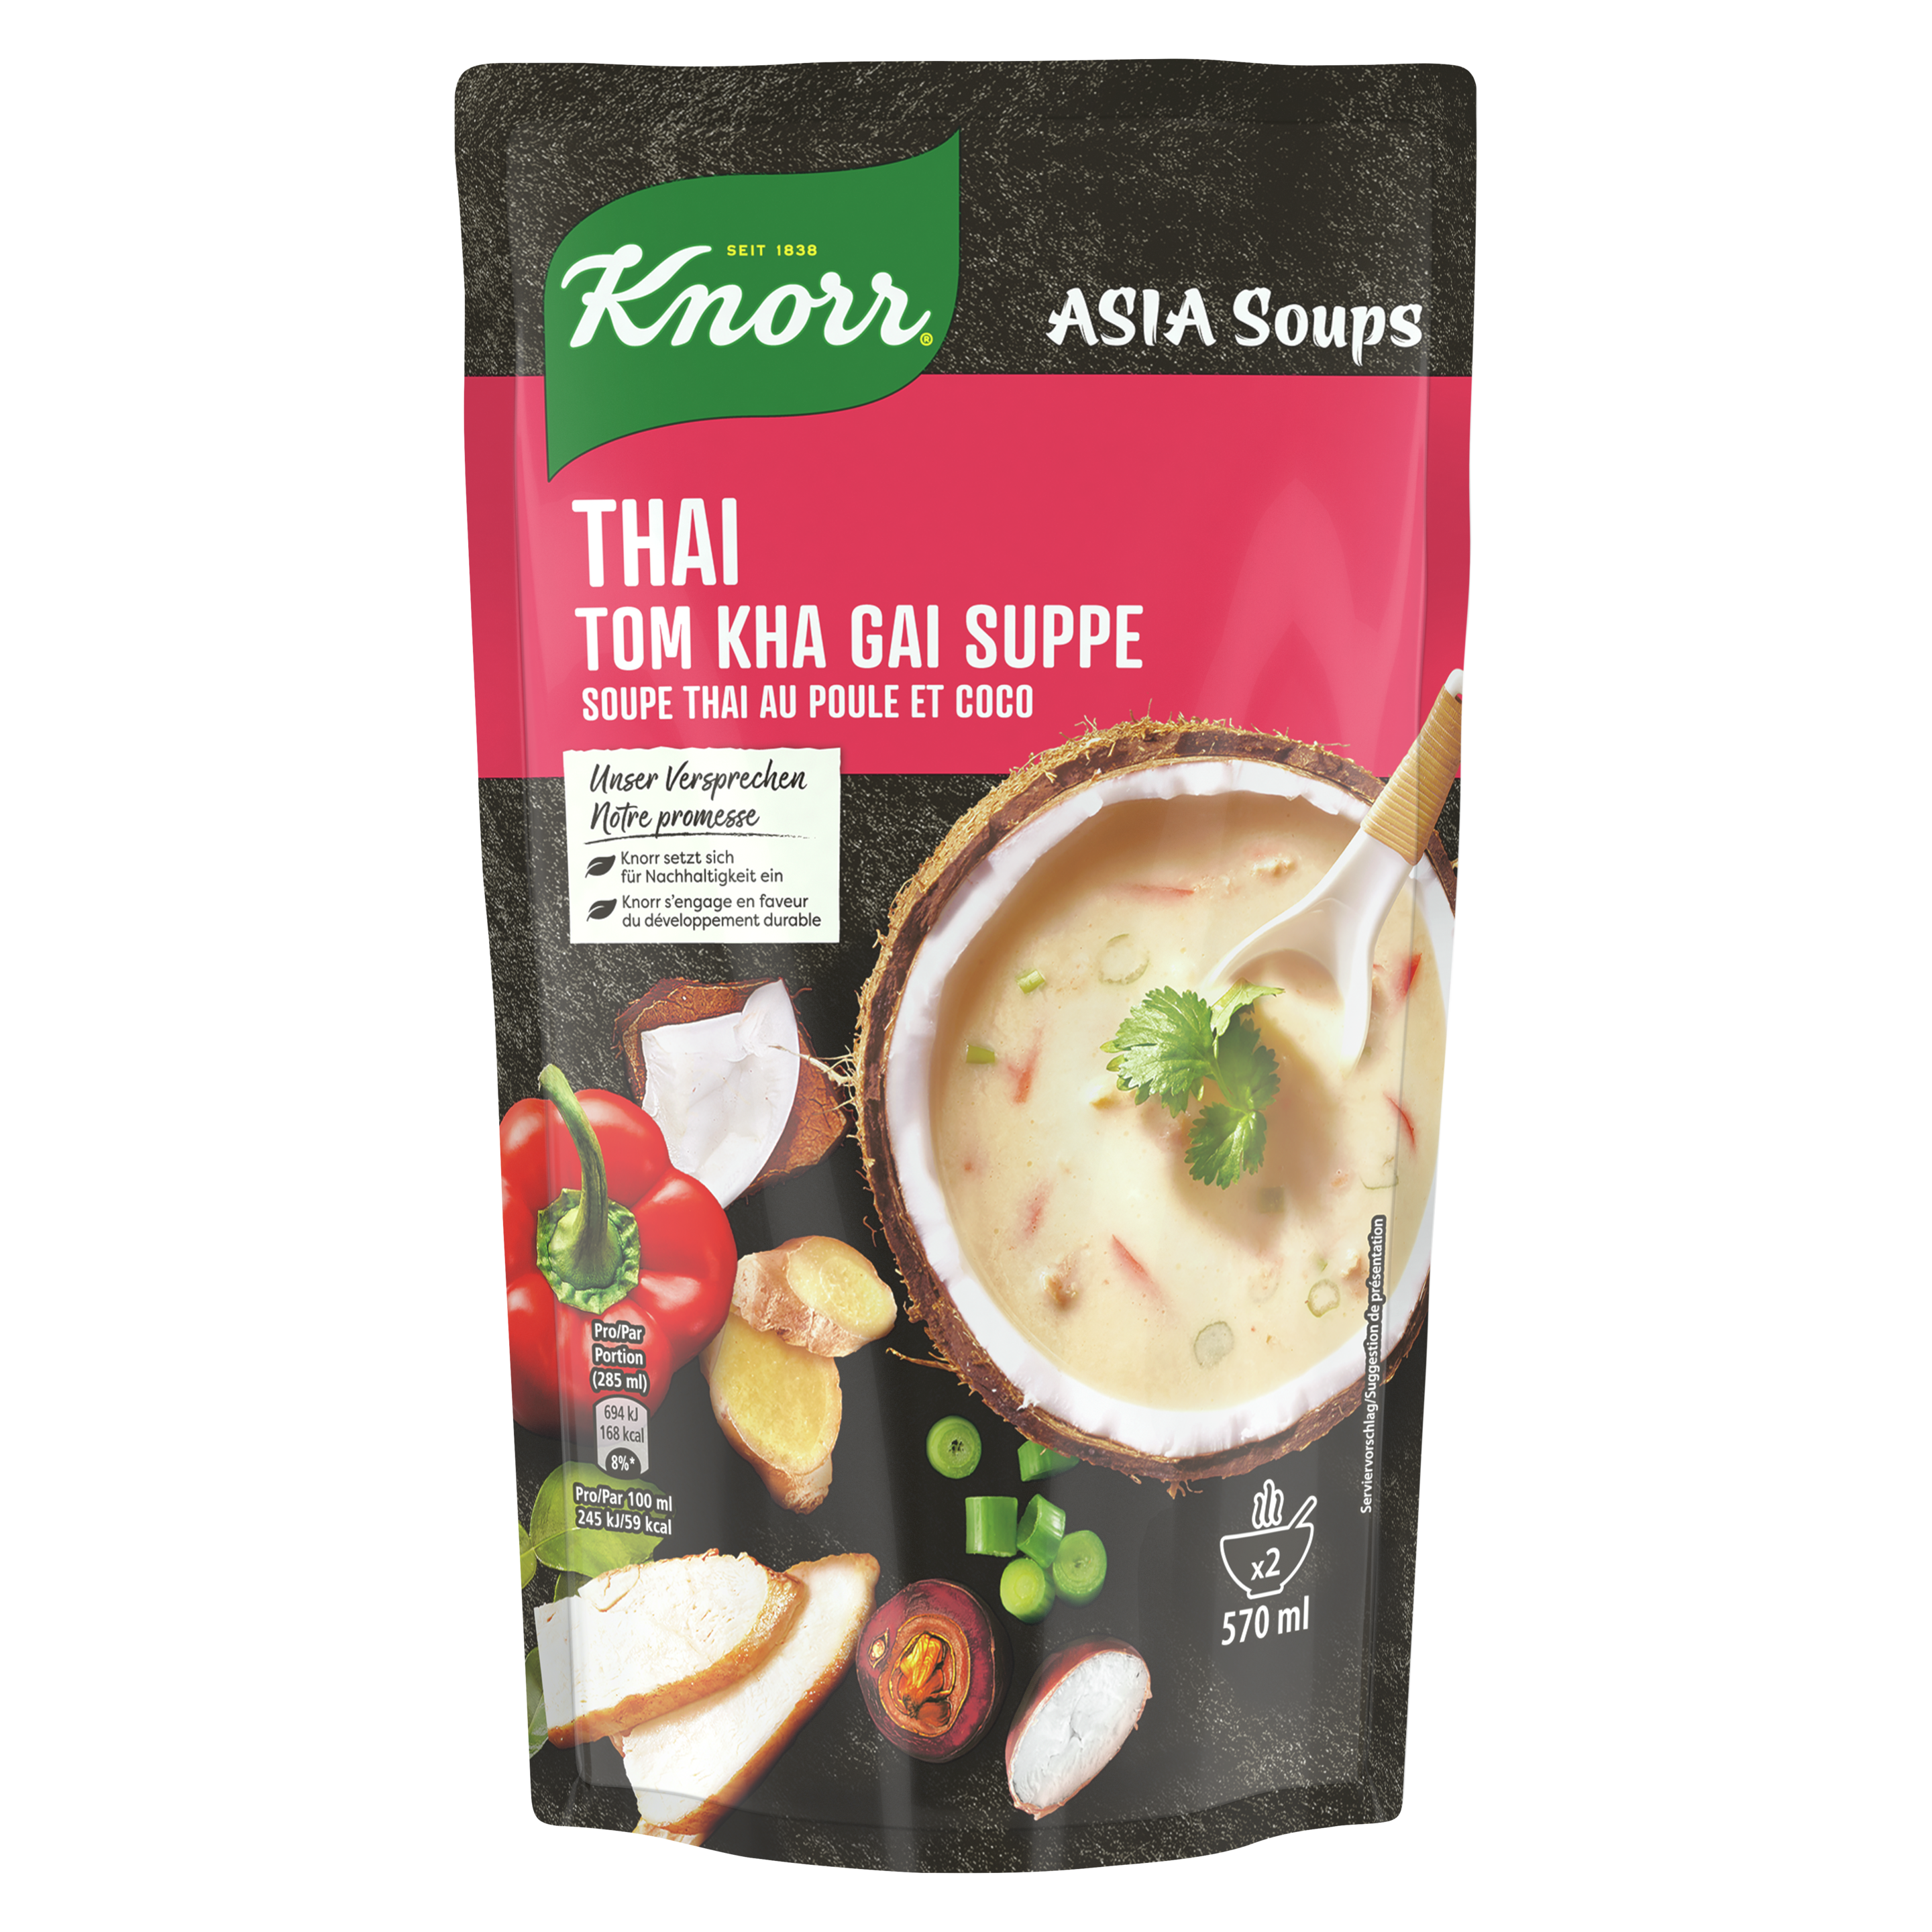 KNORR Asia soups Thai soupe thaï au poule et coco 570 ml sachet 2 portion